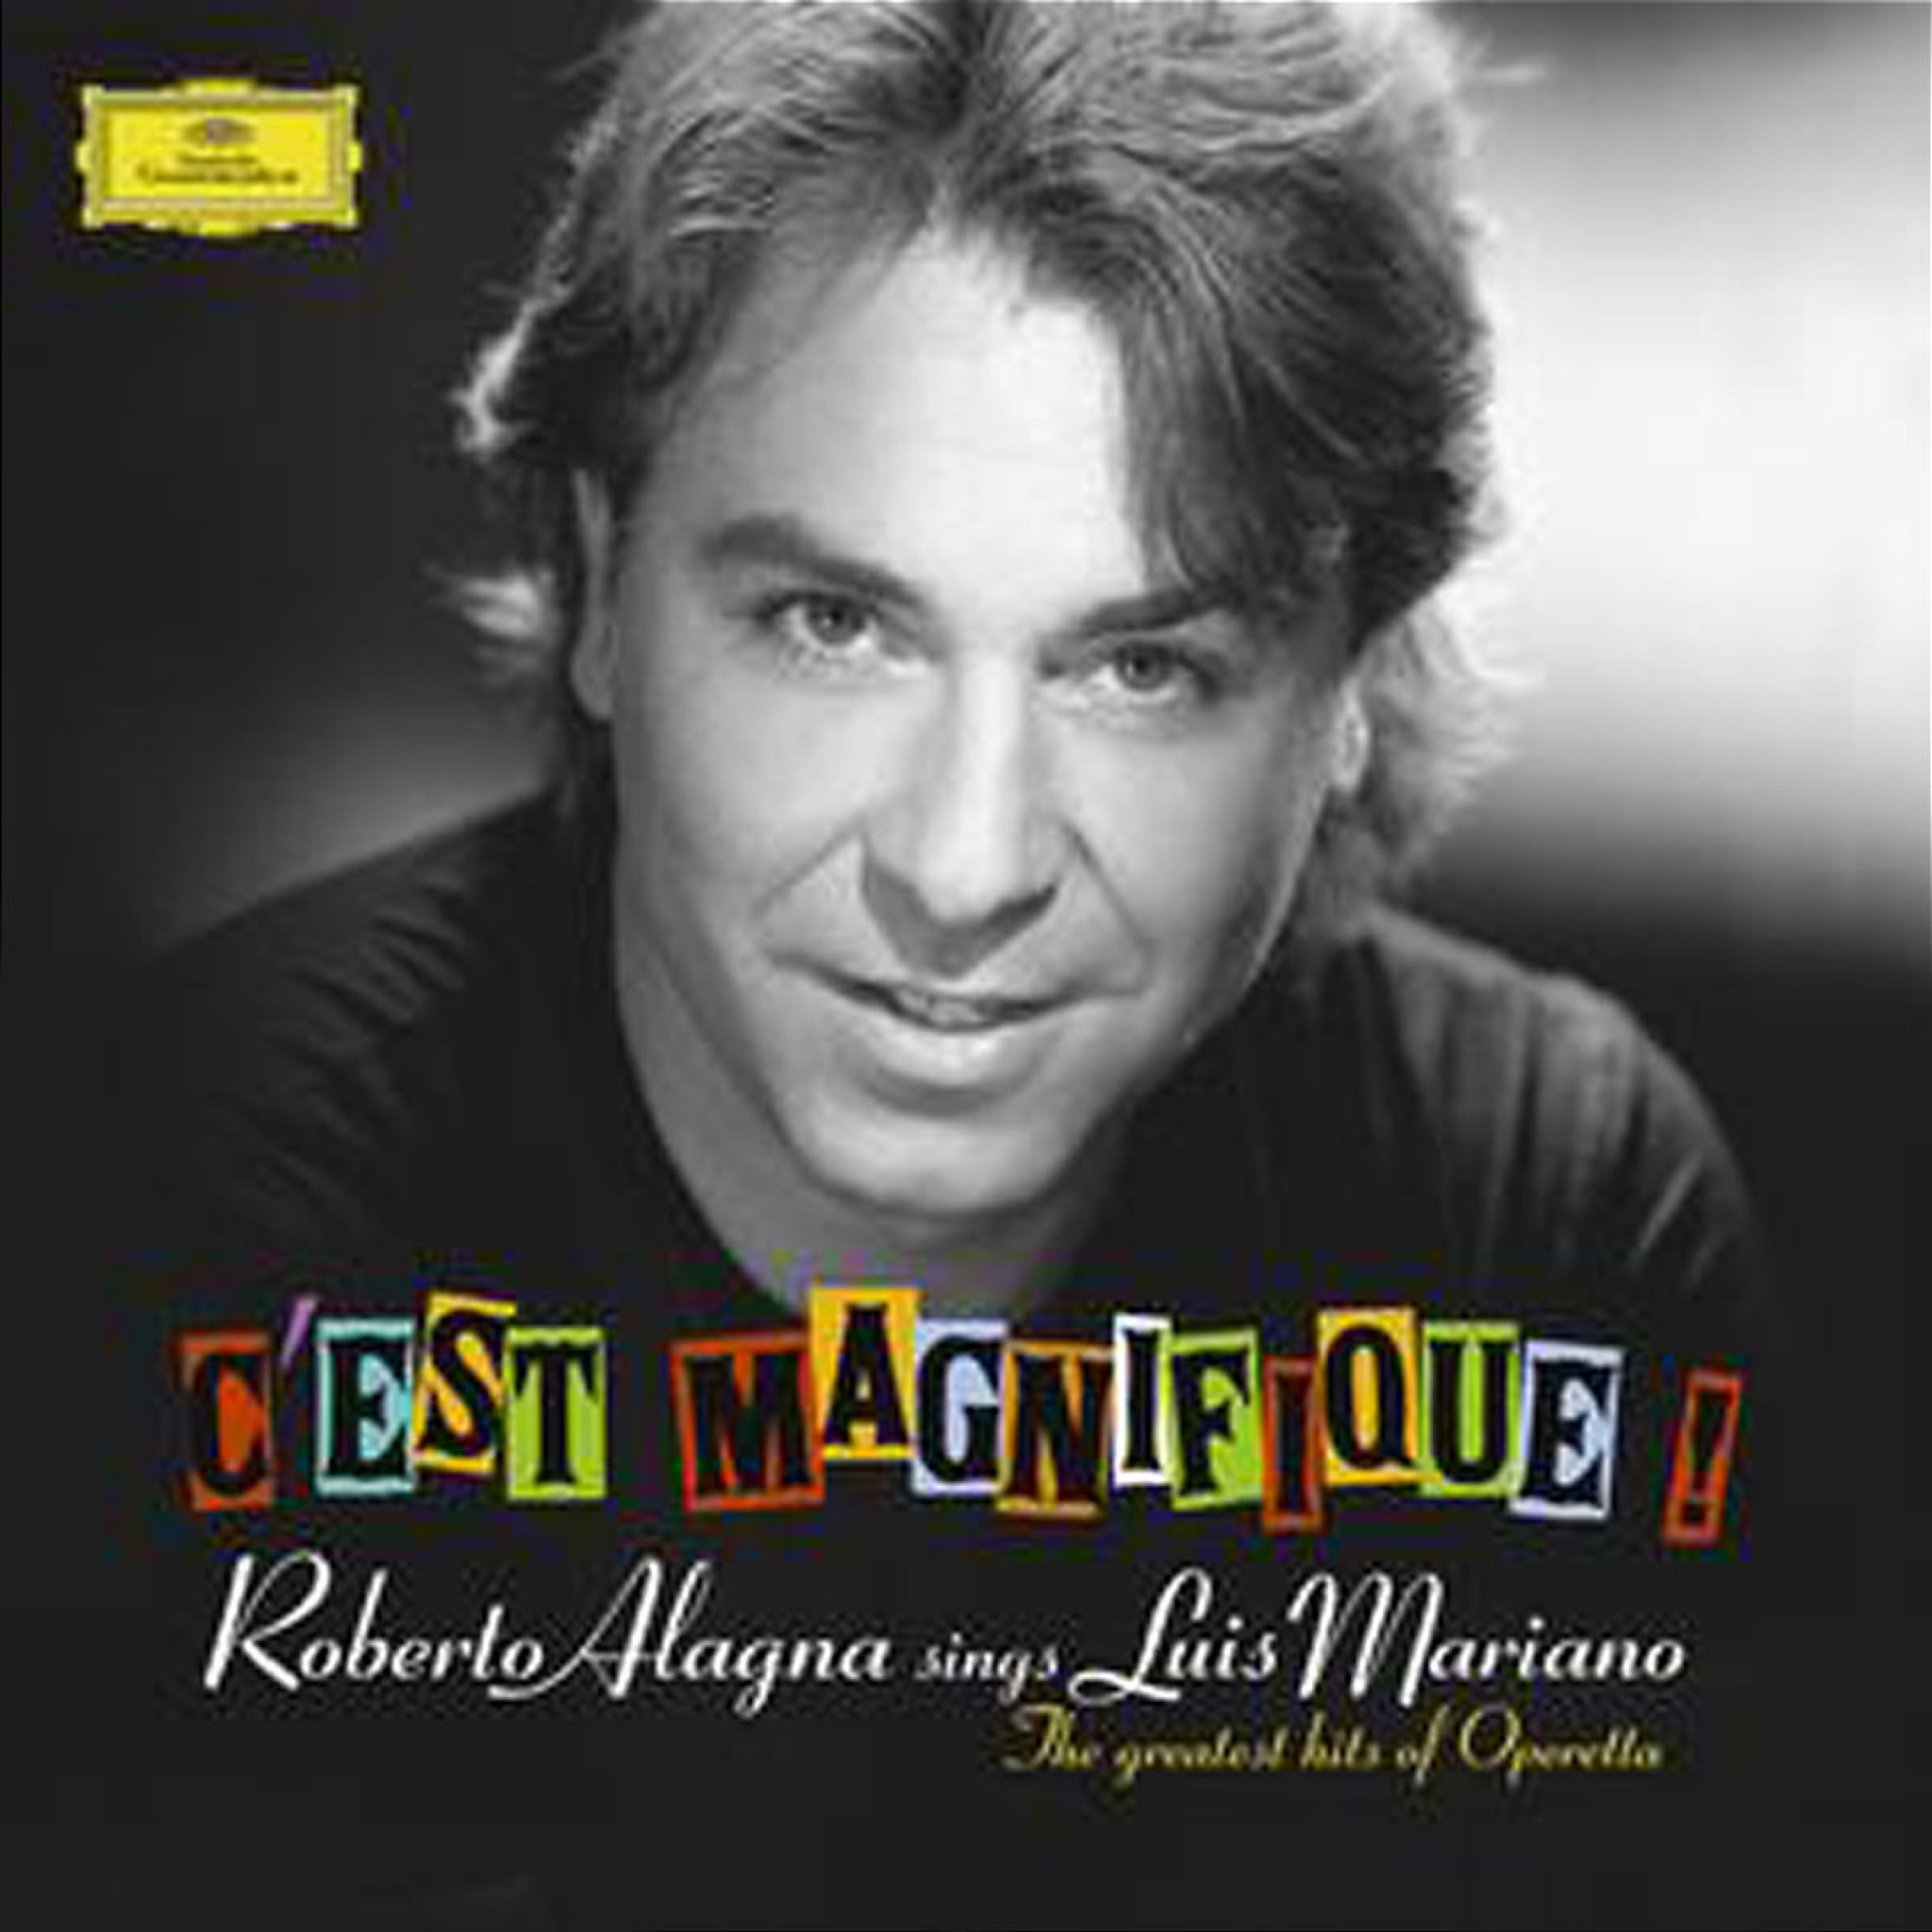 C'est Magnifique! Roberto Alagna sings Luis Mariano 0028947755690